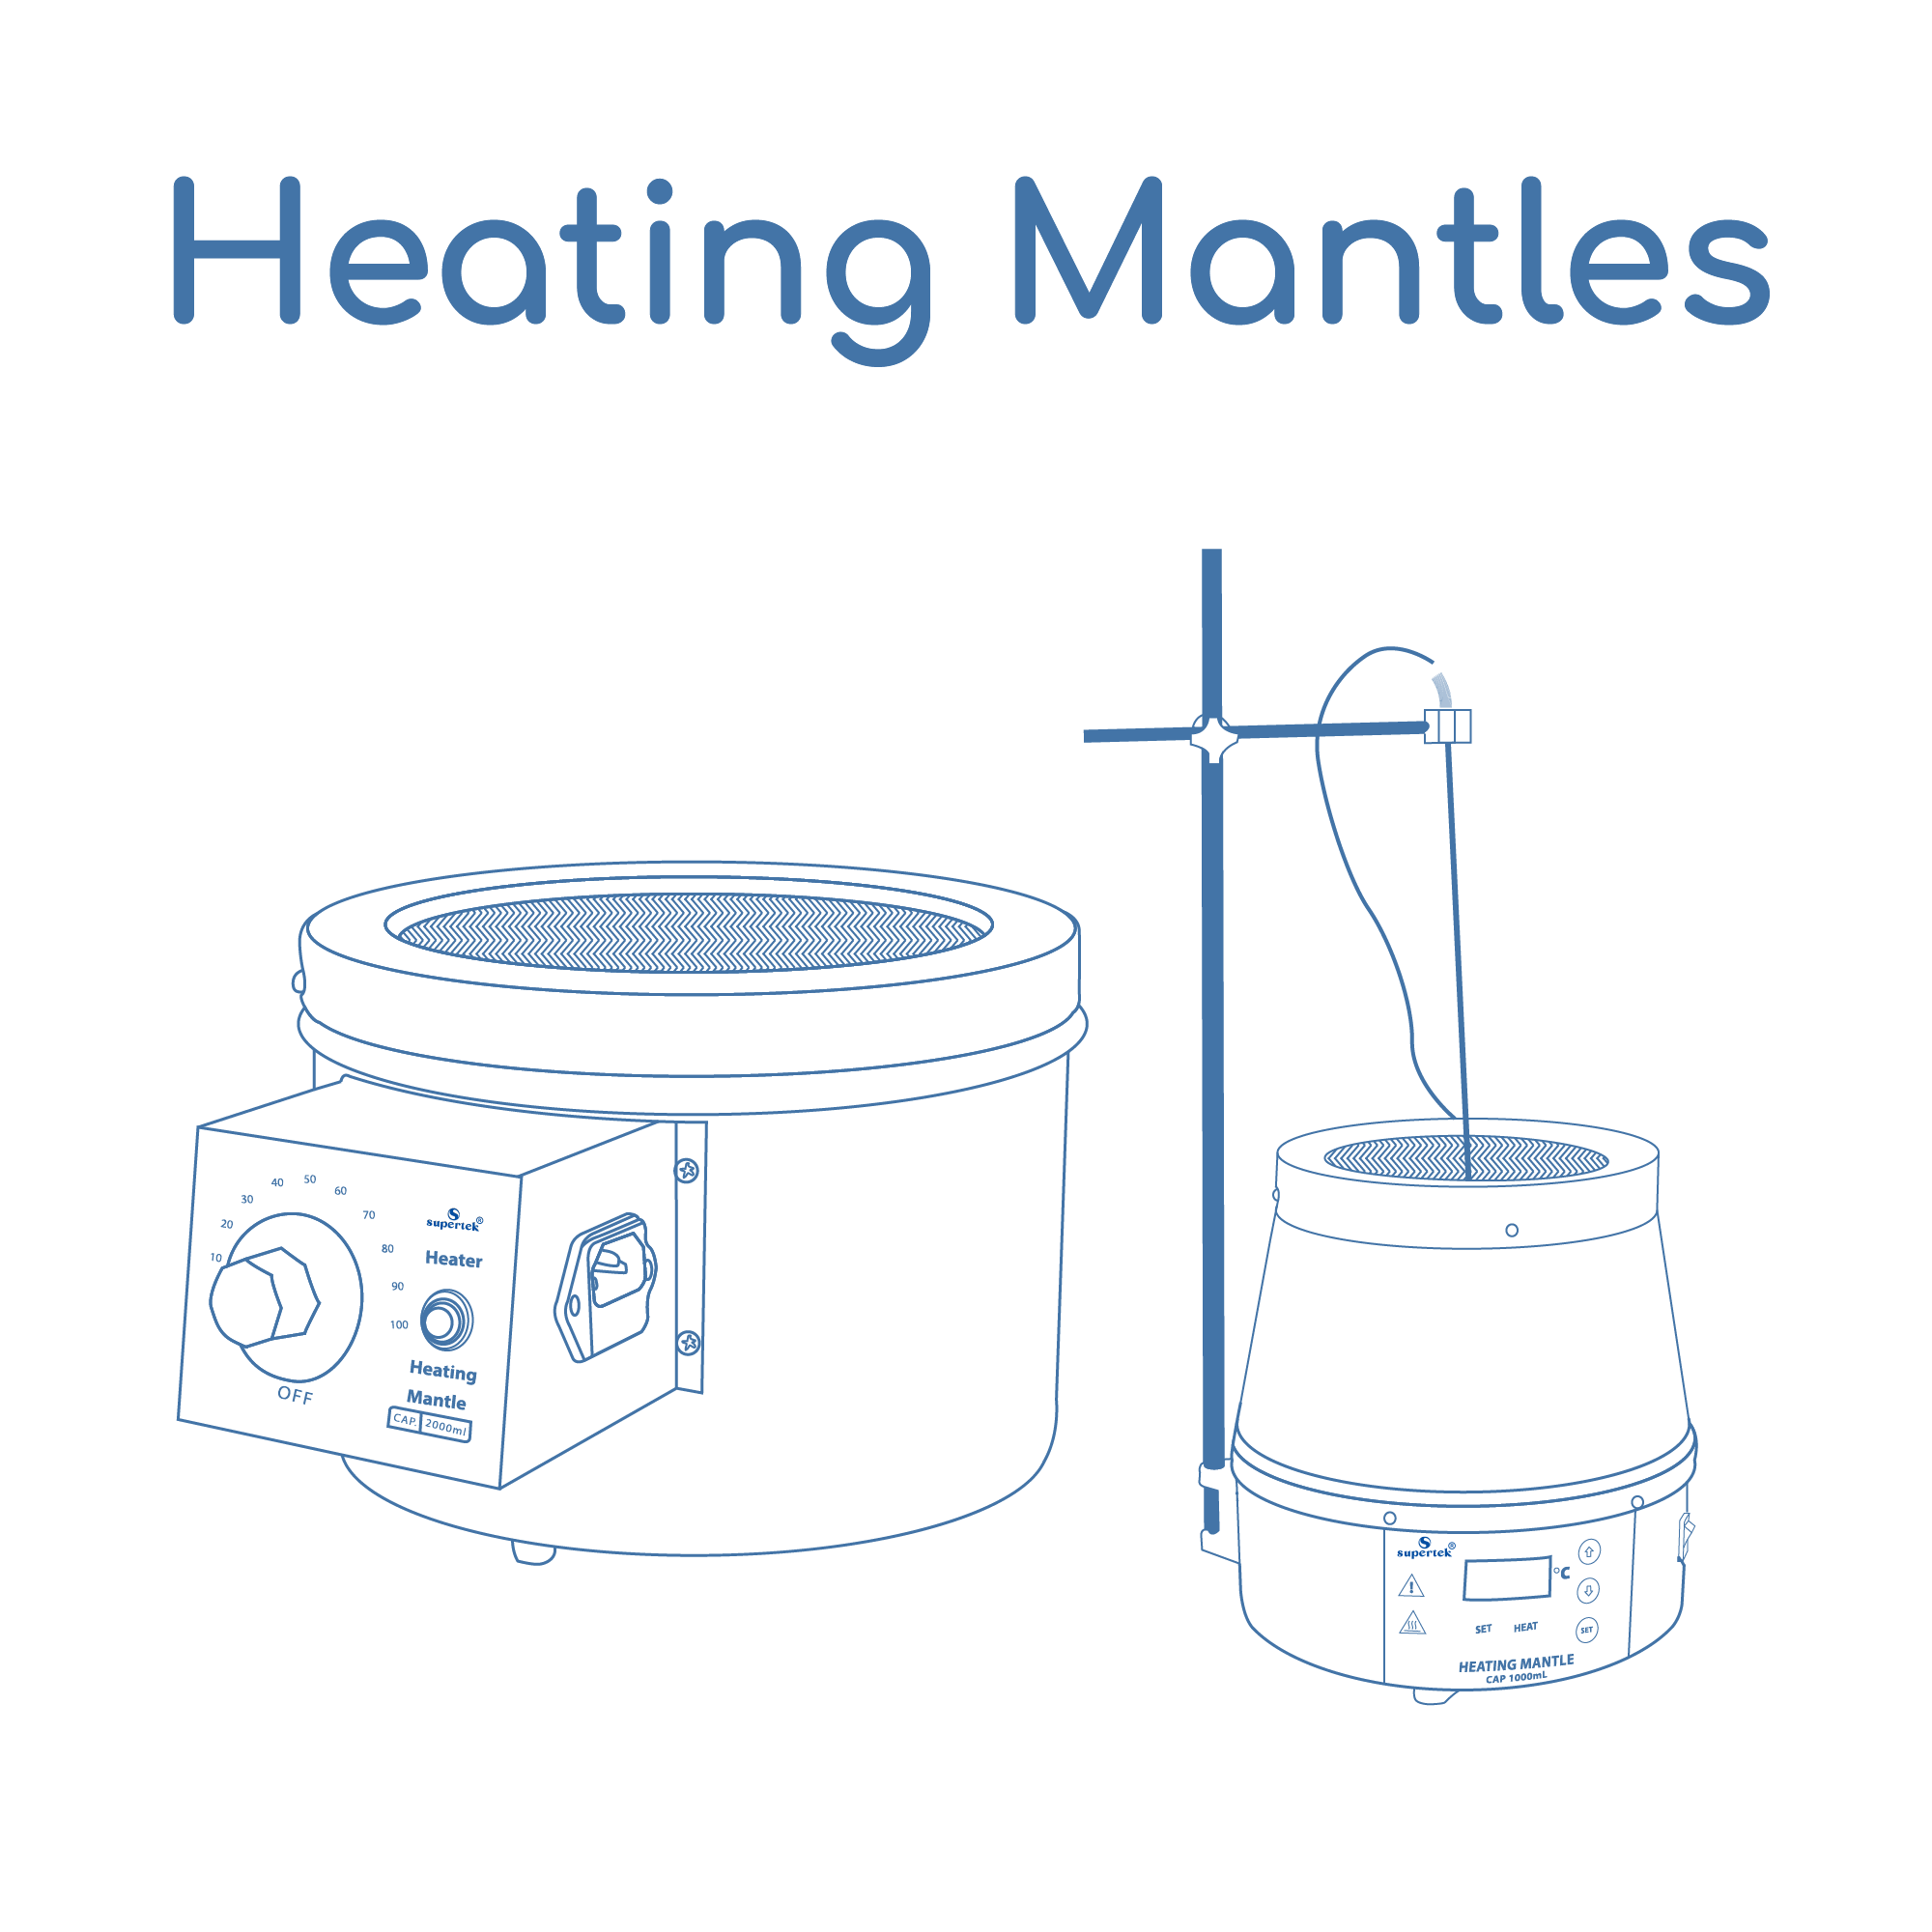 Heating Mantles